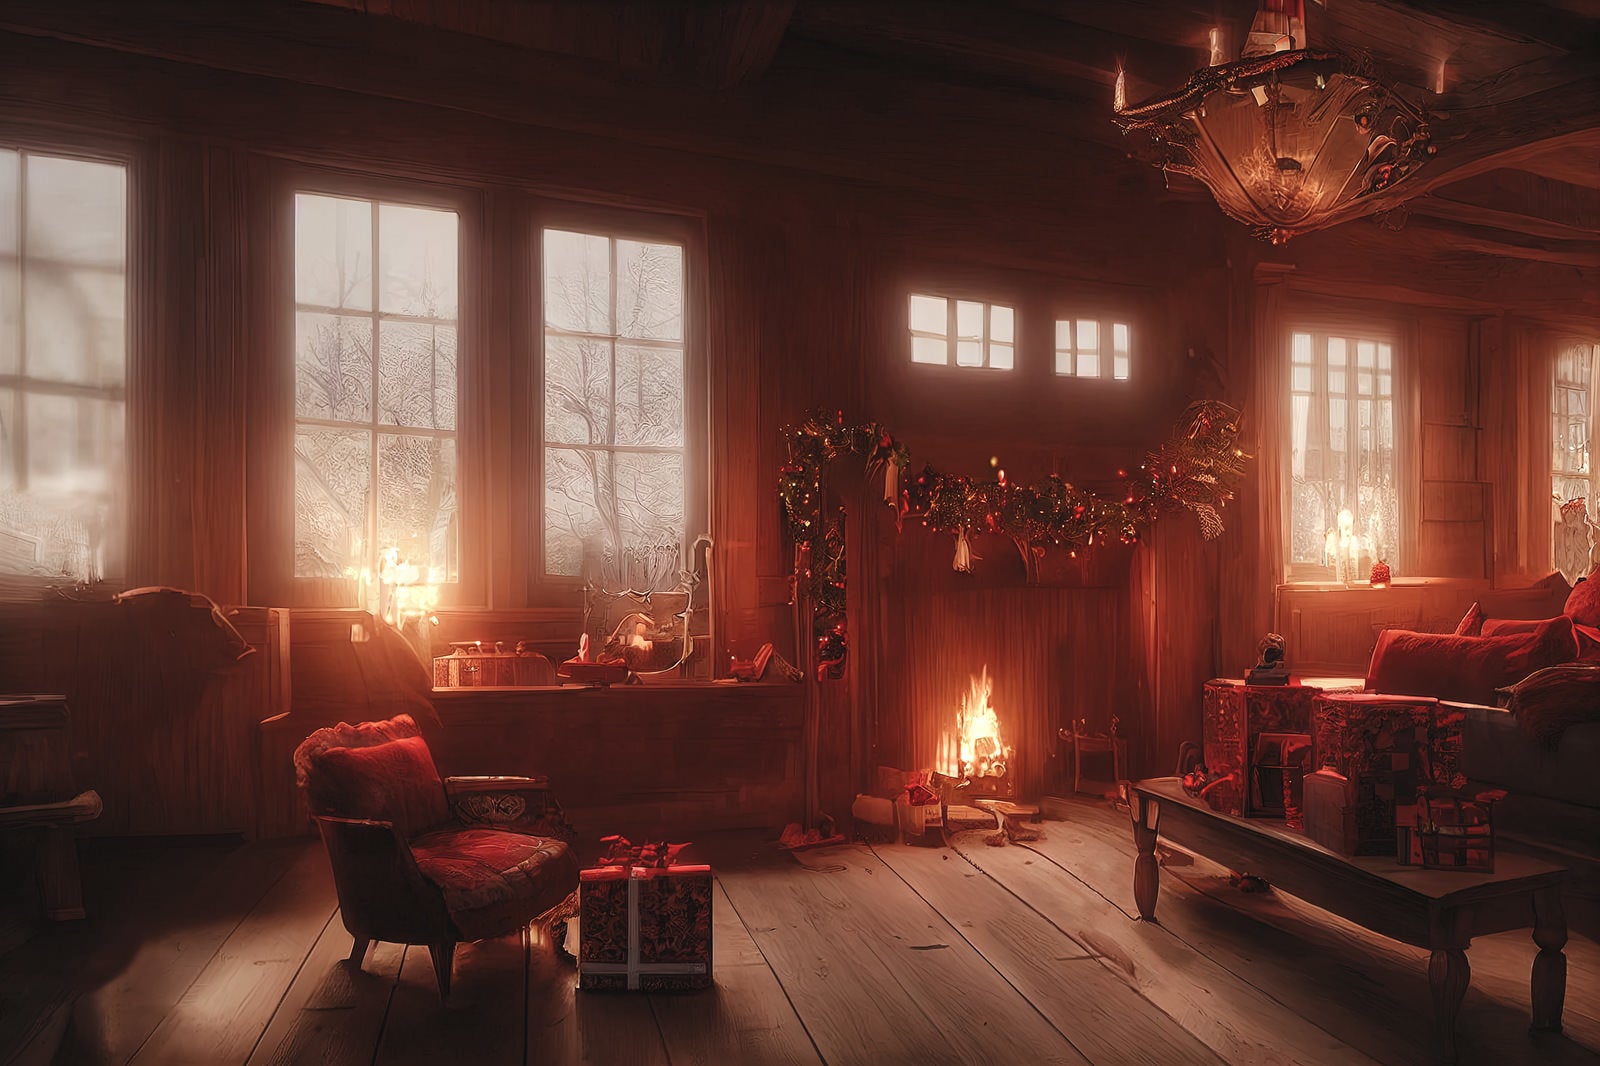 「暖炉の部屋とテーブル上のプレゼント」の写真